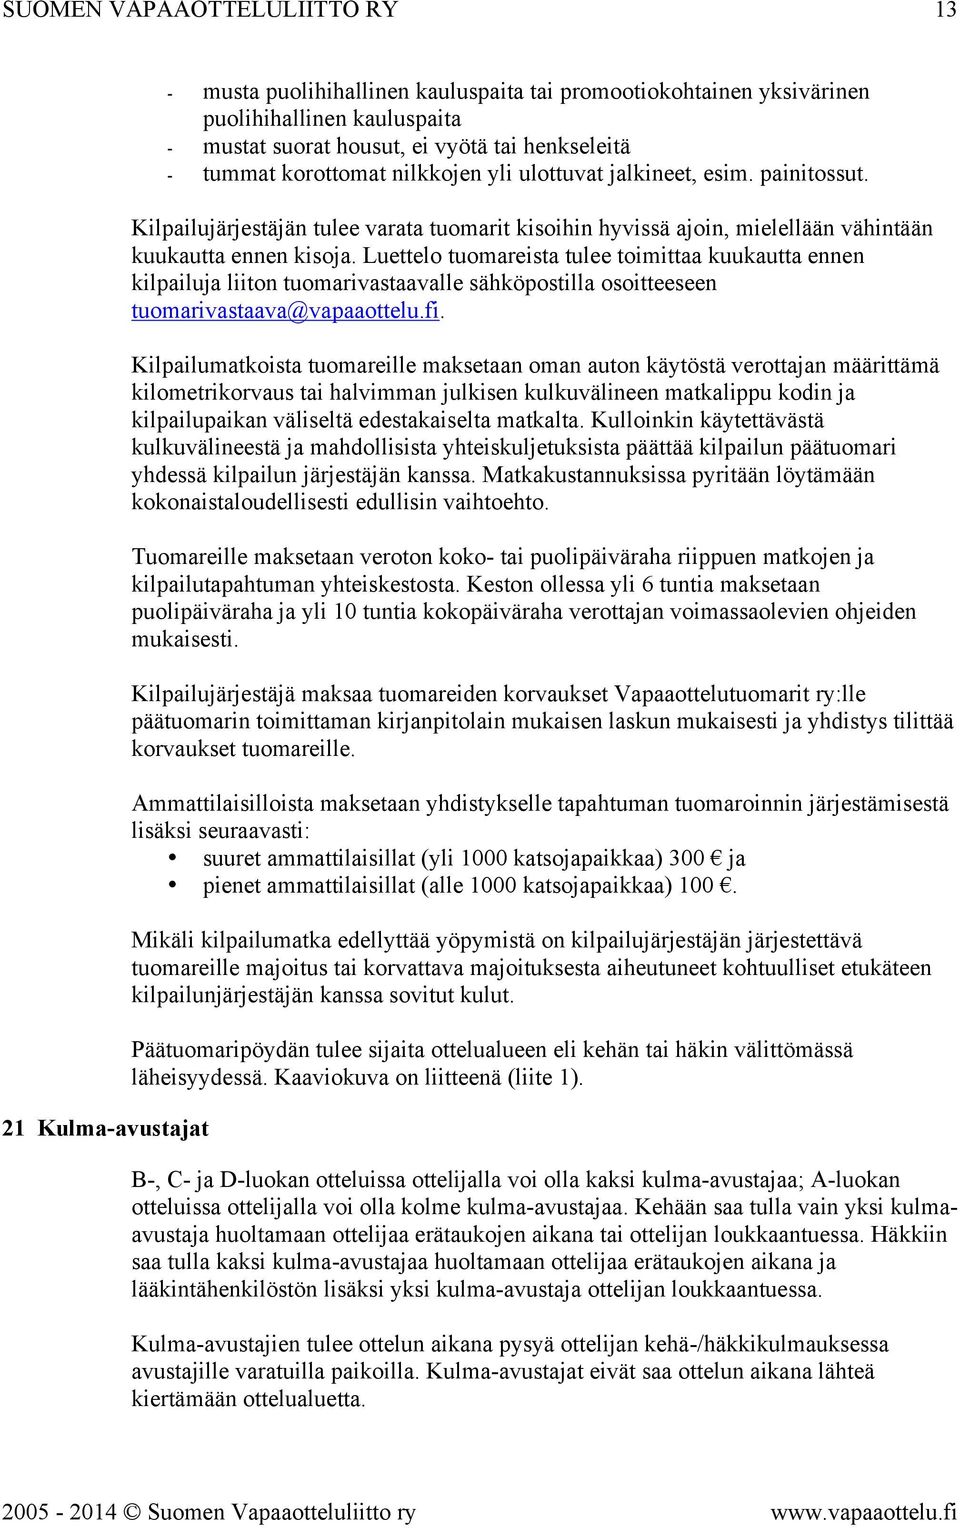 Luettelo tuomareista tulee toimittaa kuukautta ennen kilpailuja liiton tuomarivastaavalle sähköpostilla osoitteeseen tuomarivastaava@vapaaottelu.fi.